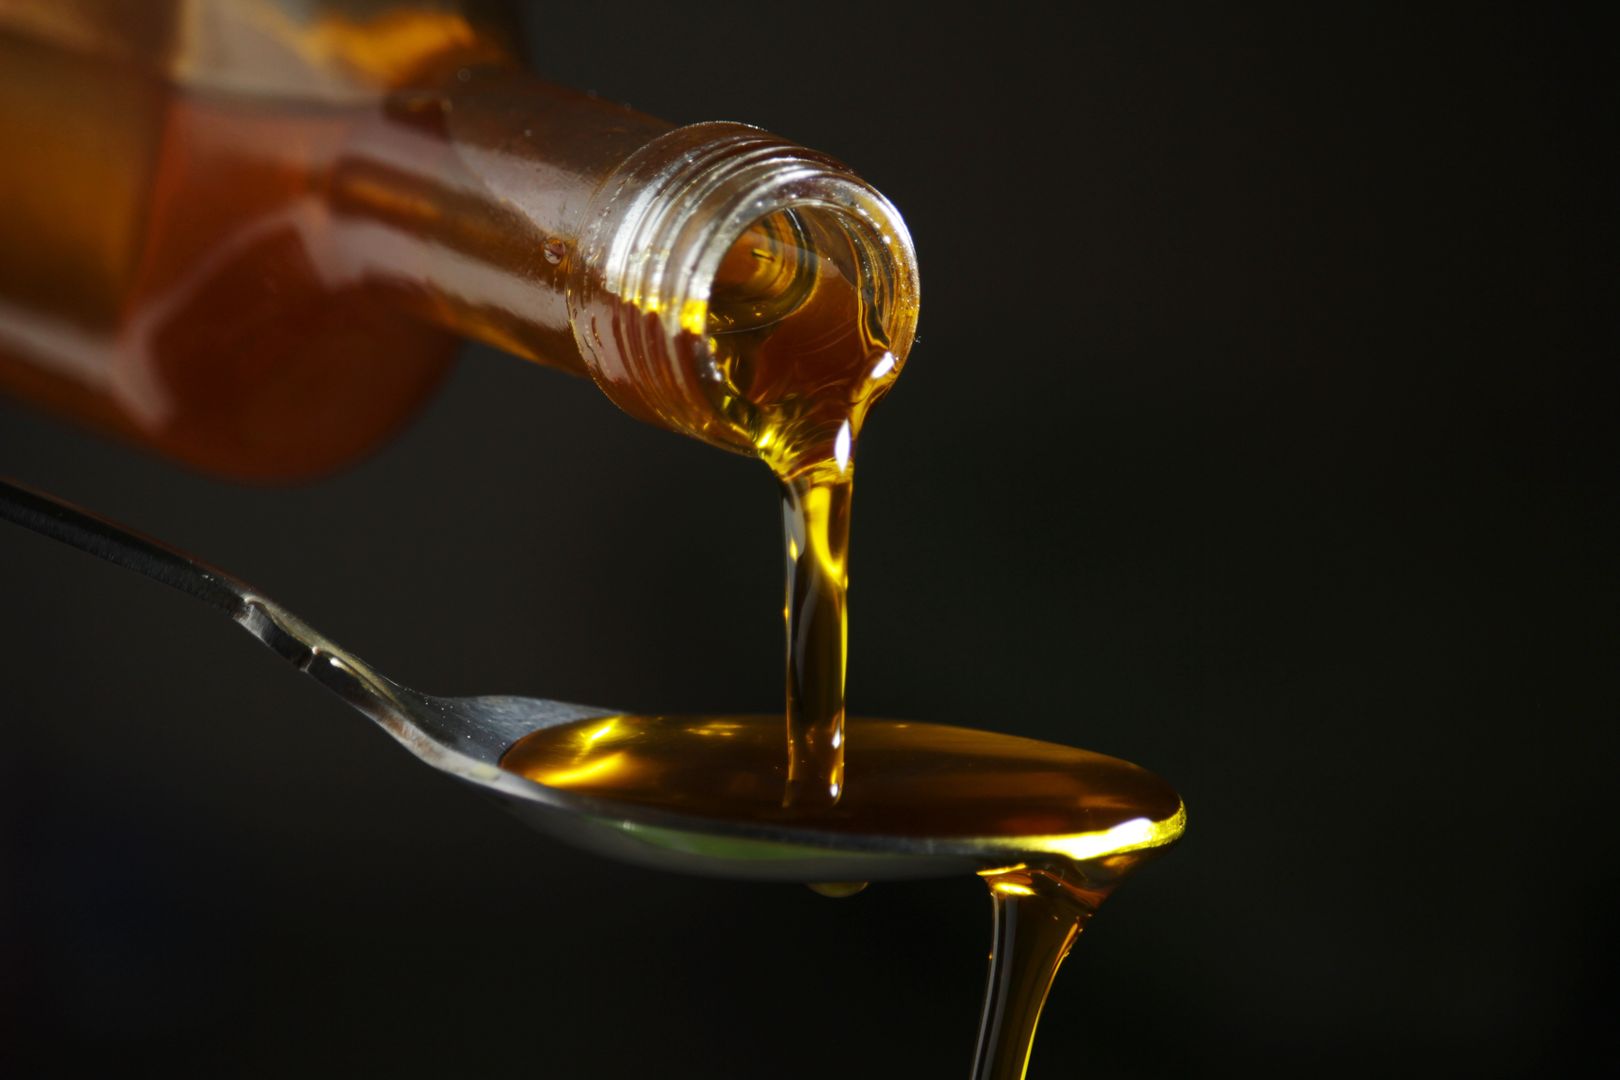 Udowodniono, że olej rzepakowy wspomaga odchudzanie